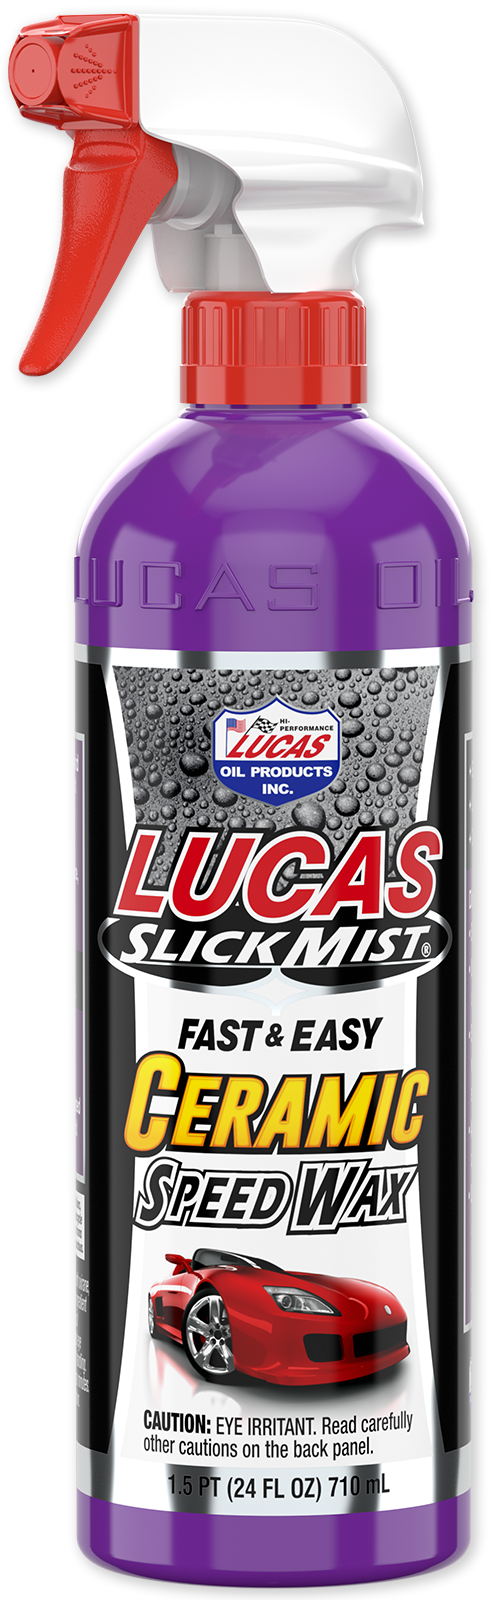 Lucas Slick Mist® Ceramic Speed Wax - One Stop Motorshop